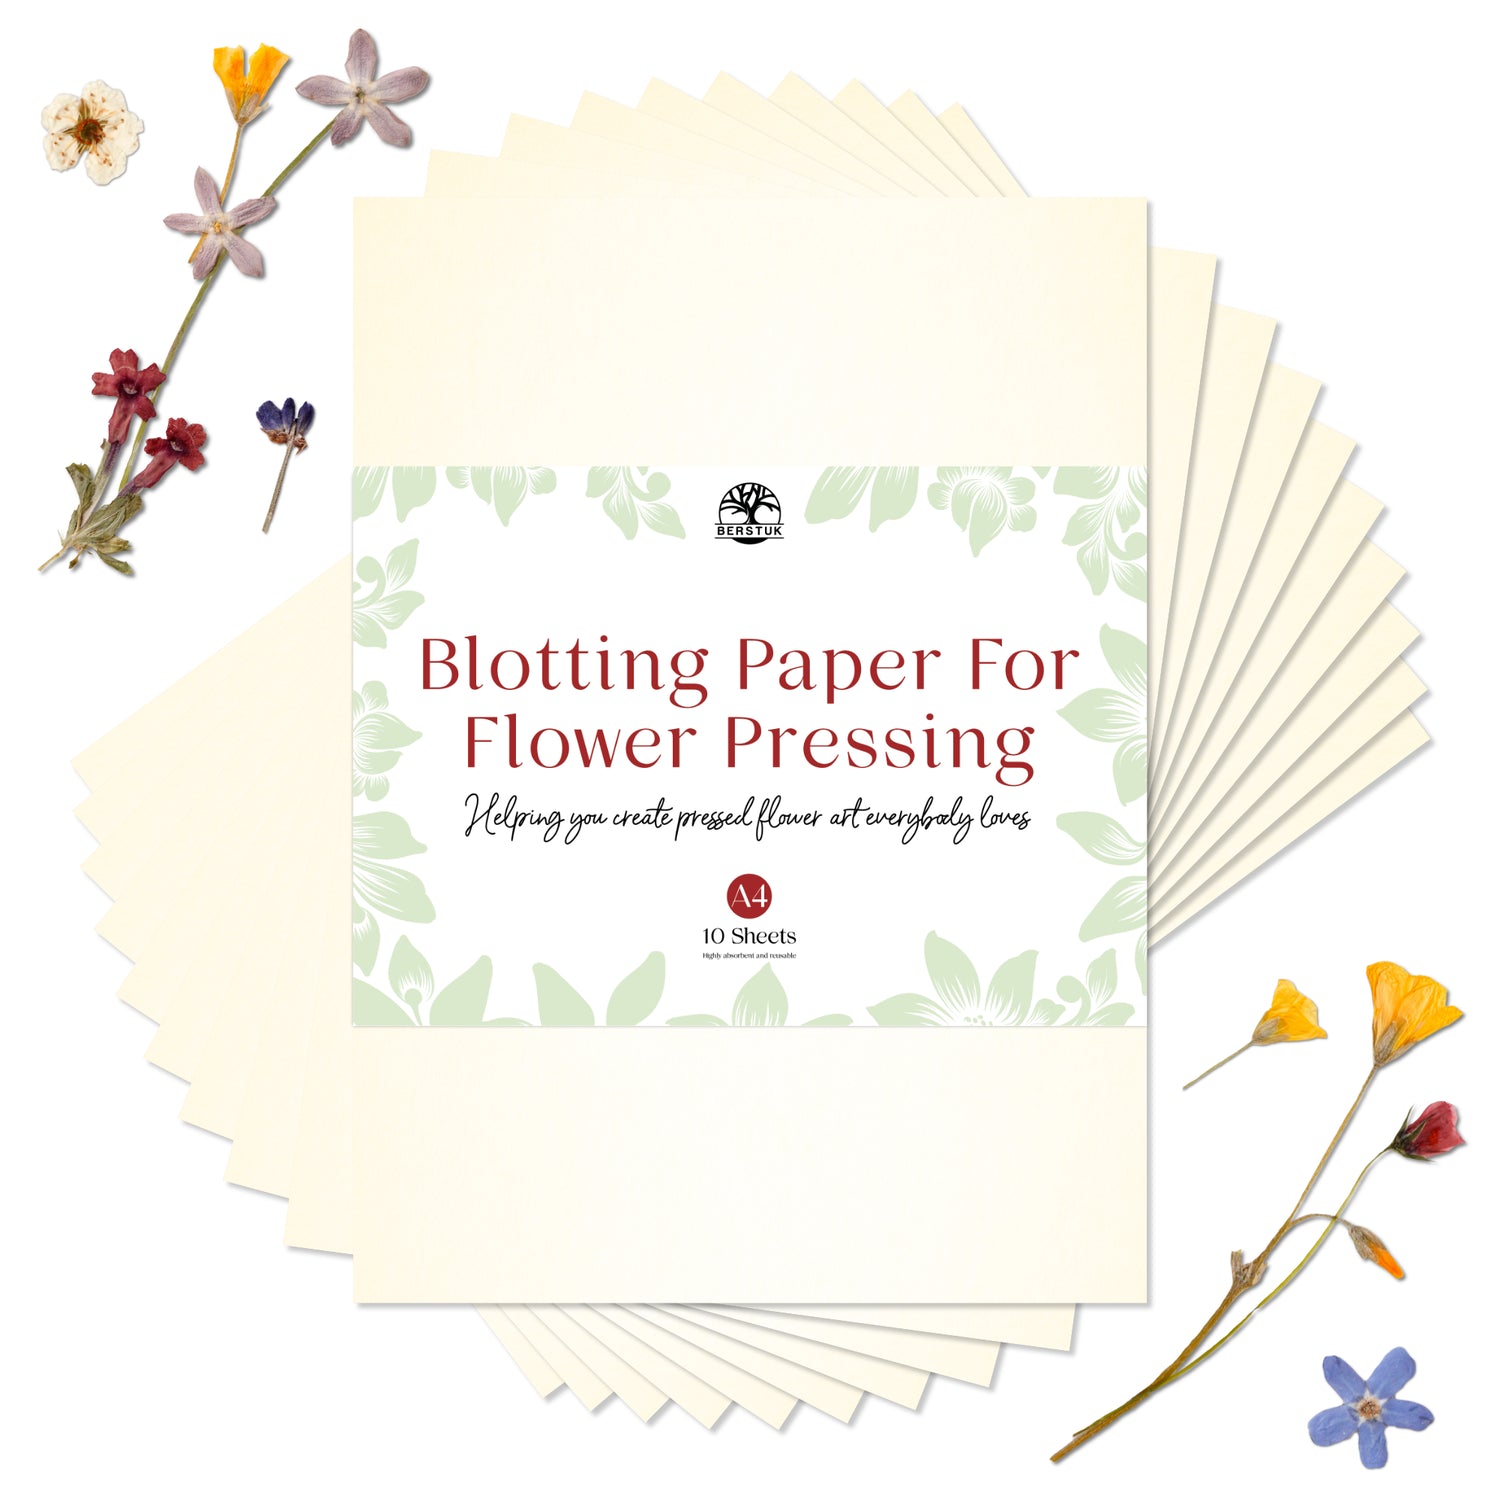 Peter Pauper Press Flowers Sticker Set 340696 – Good's Store Online